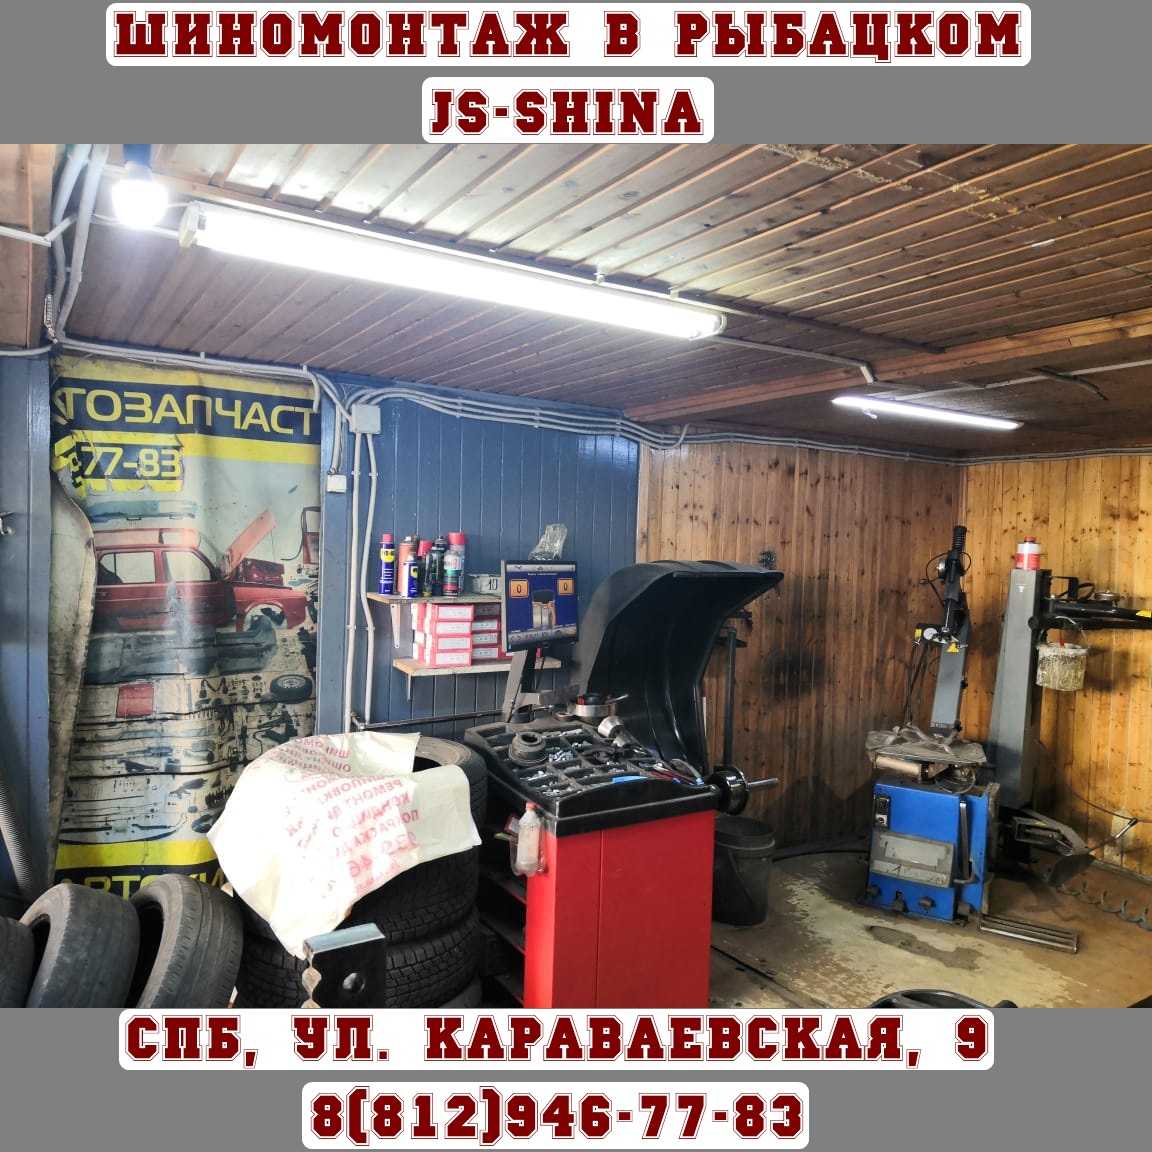 Шиномонтаж 24 часа в СПб, ул. Караваевская, д. 9 ремонт дисков